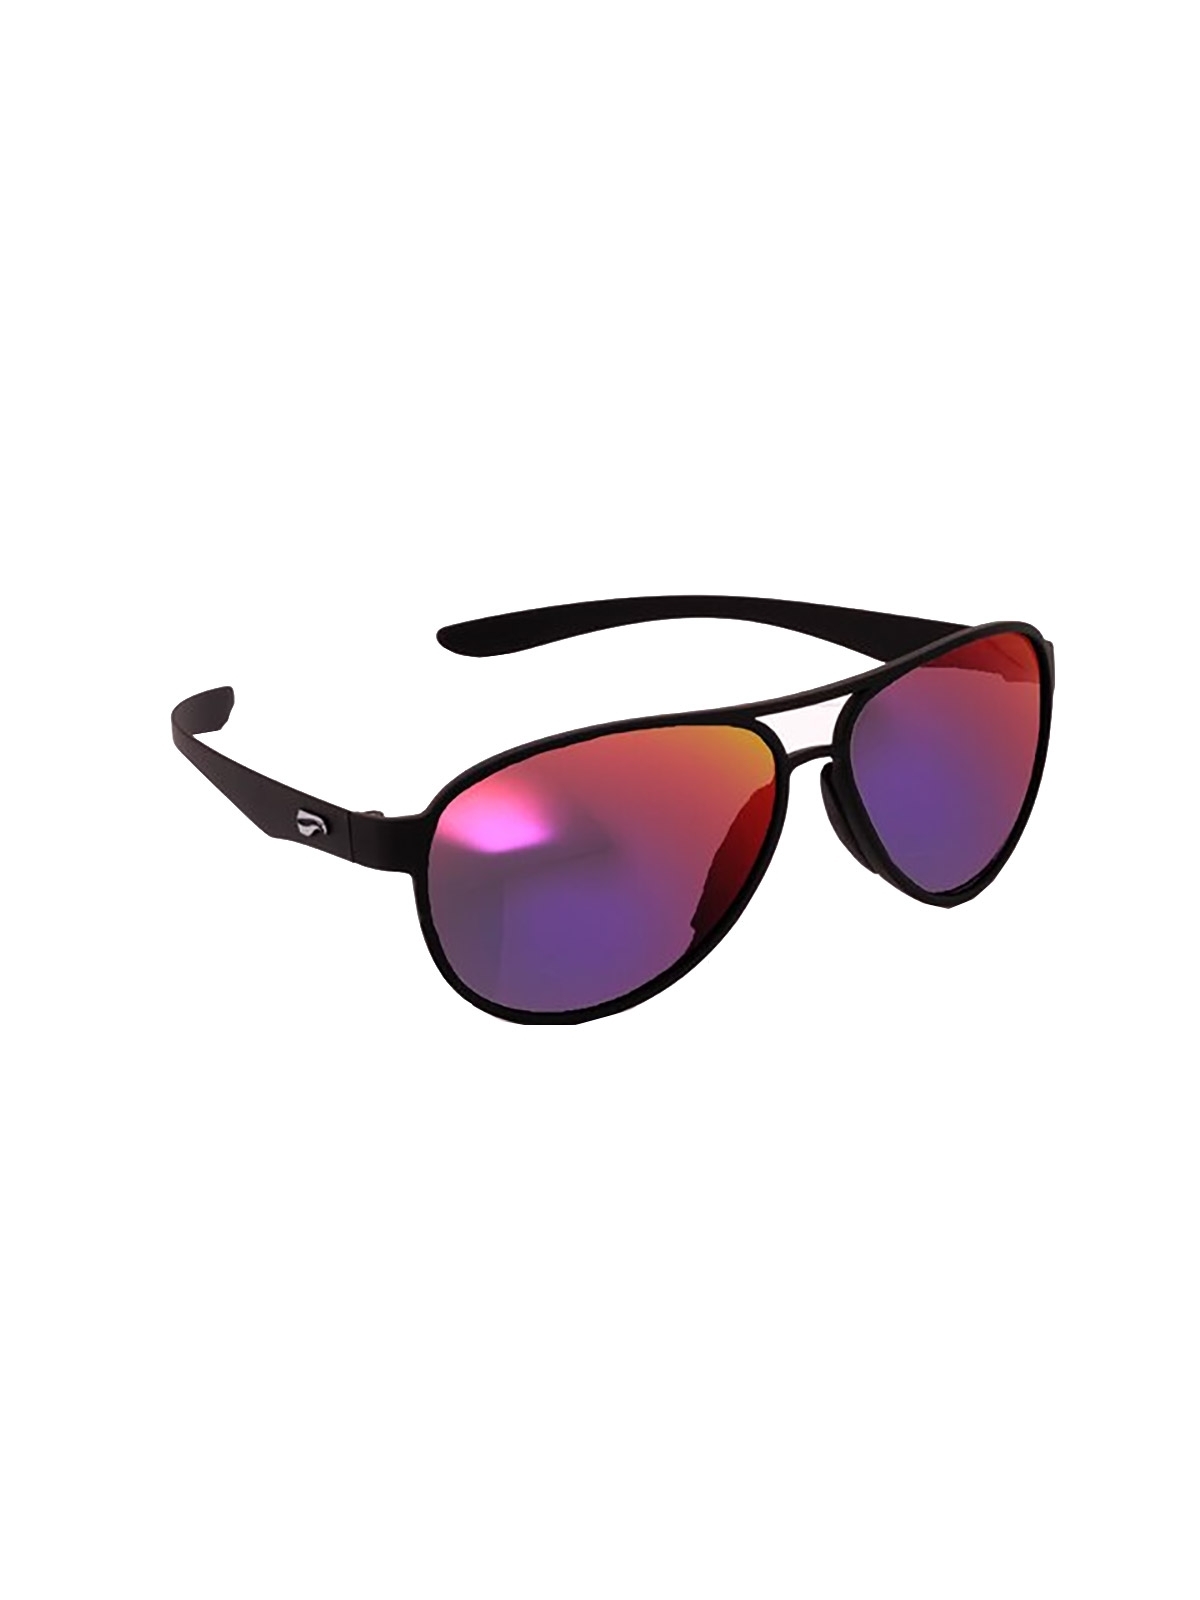 Flying Eyes Sunglasses Kestrel Aviator - Matte Black Frame, Mirrored Sunset Lenses